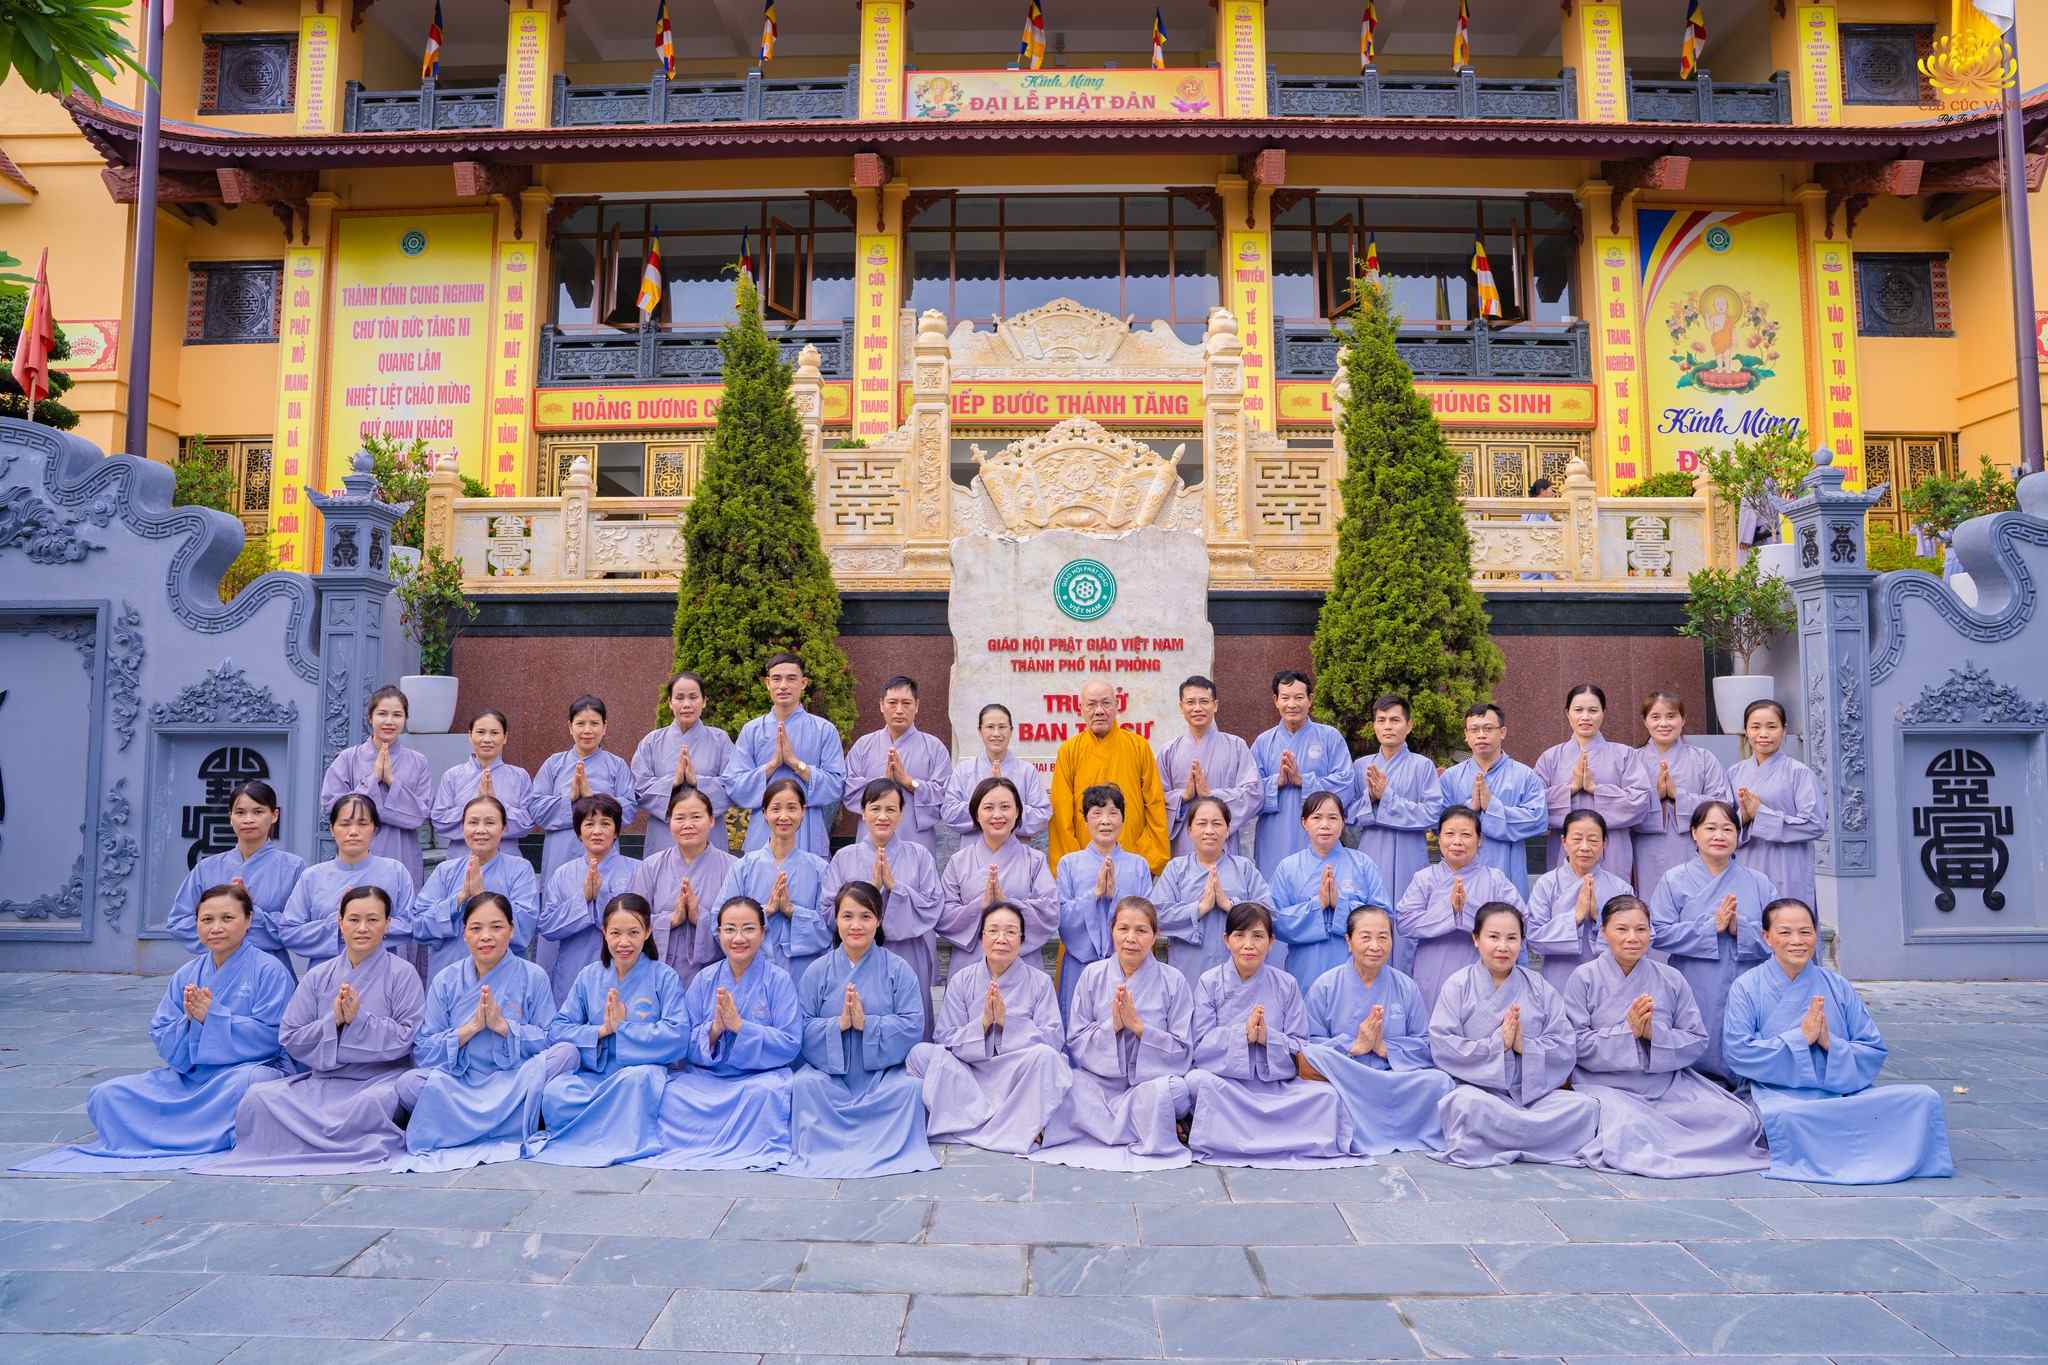 Bức hình lưu niệm của các Phật tử tại Hạ trường chùa Nam Hải (Quận Lê Chân, TP. Hải Phòng), bên Hoà Thượng Đường chủ Thích Quảng Tùng - Trưởng ban tri sự GHPGVN thành phố Hải Phòng.